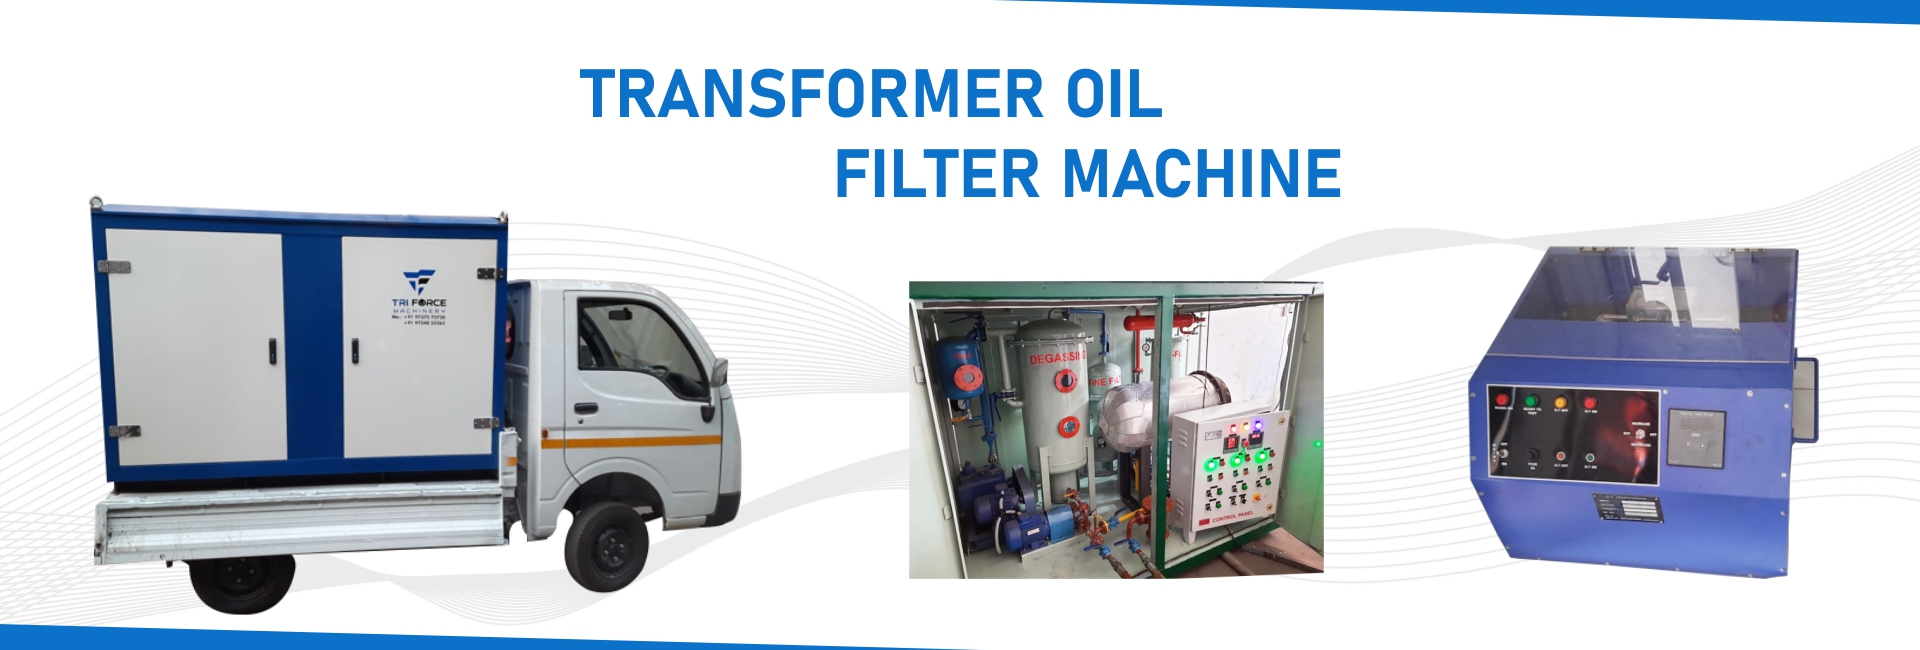 Transformer Oil Filter Machine Suppliers